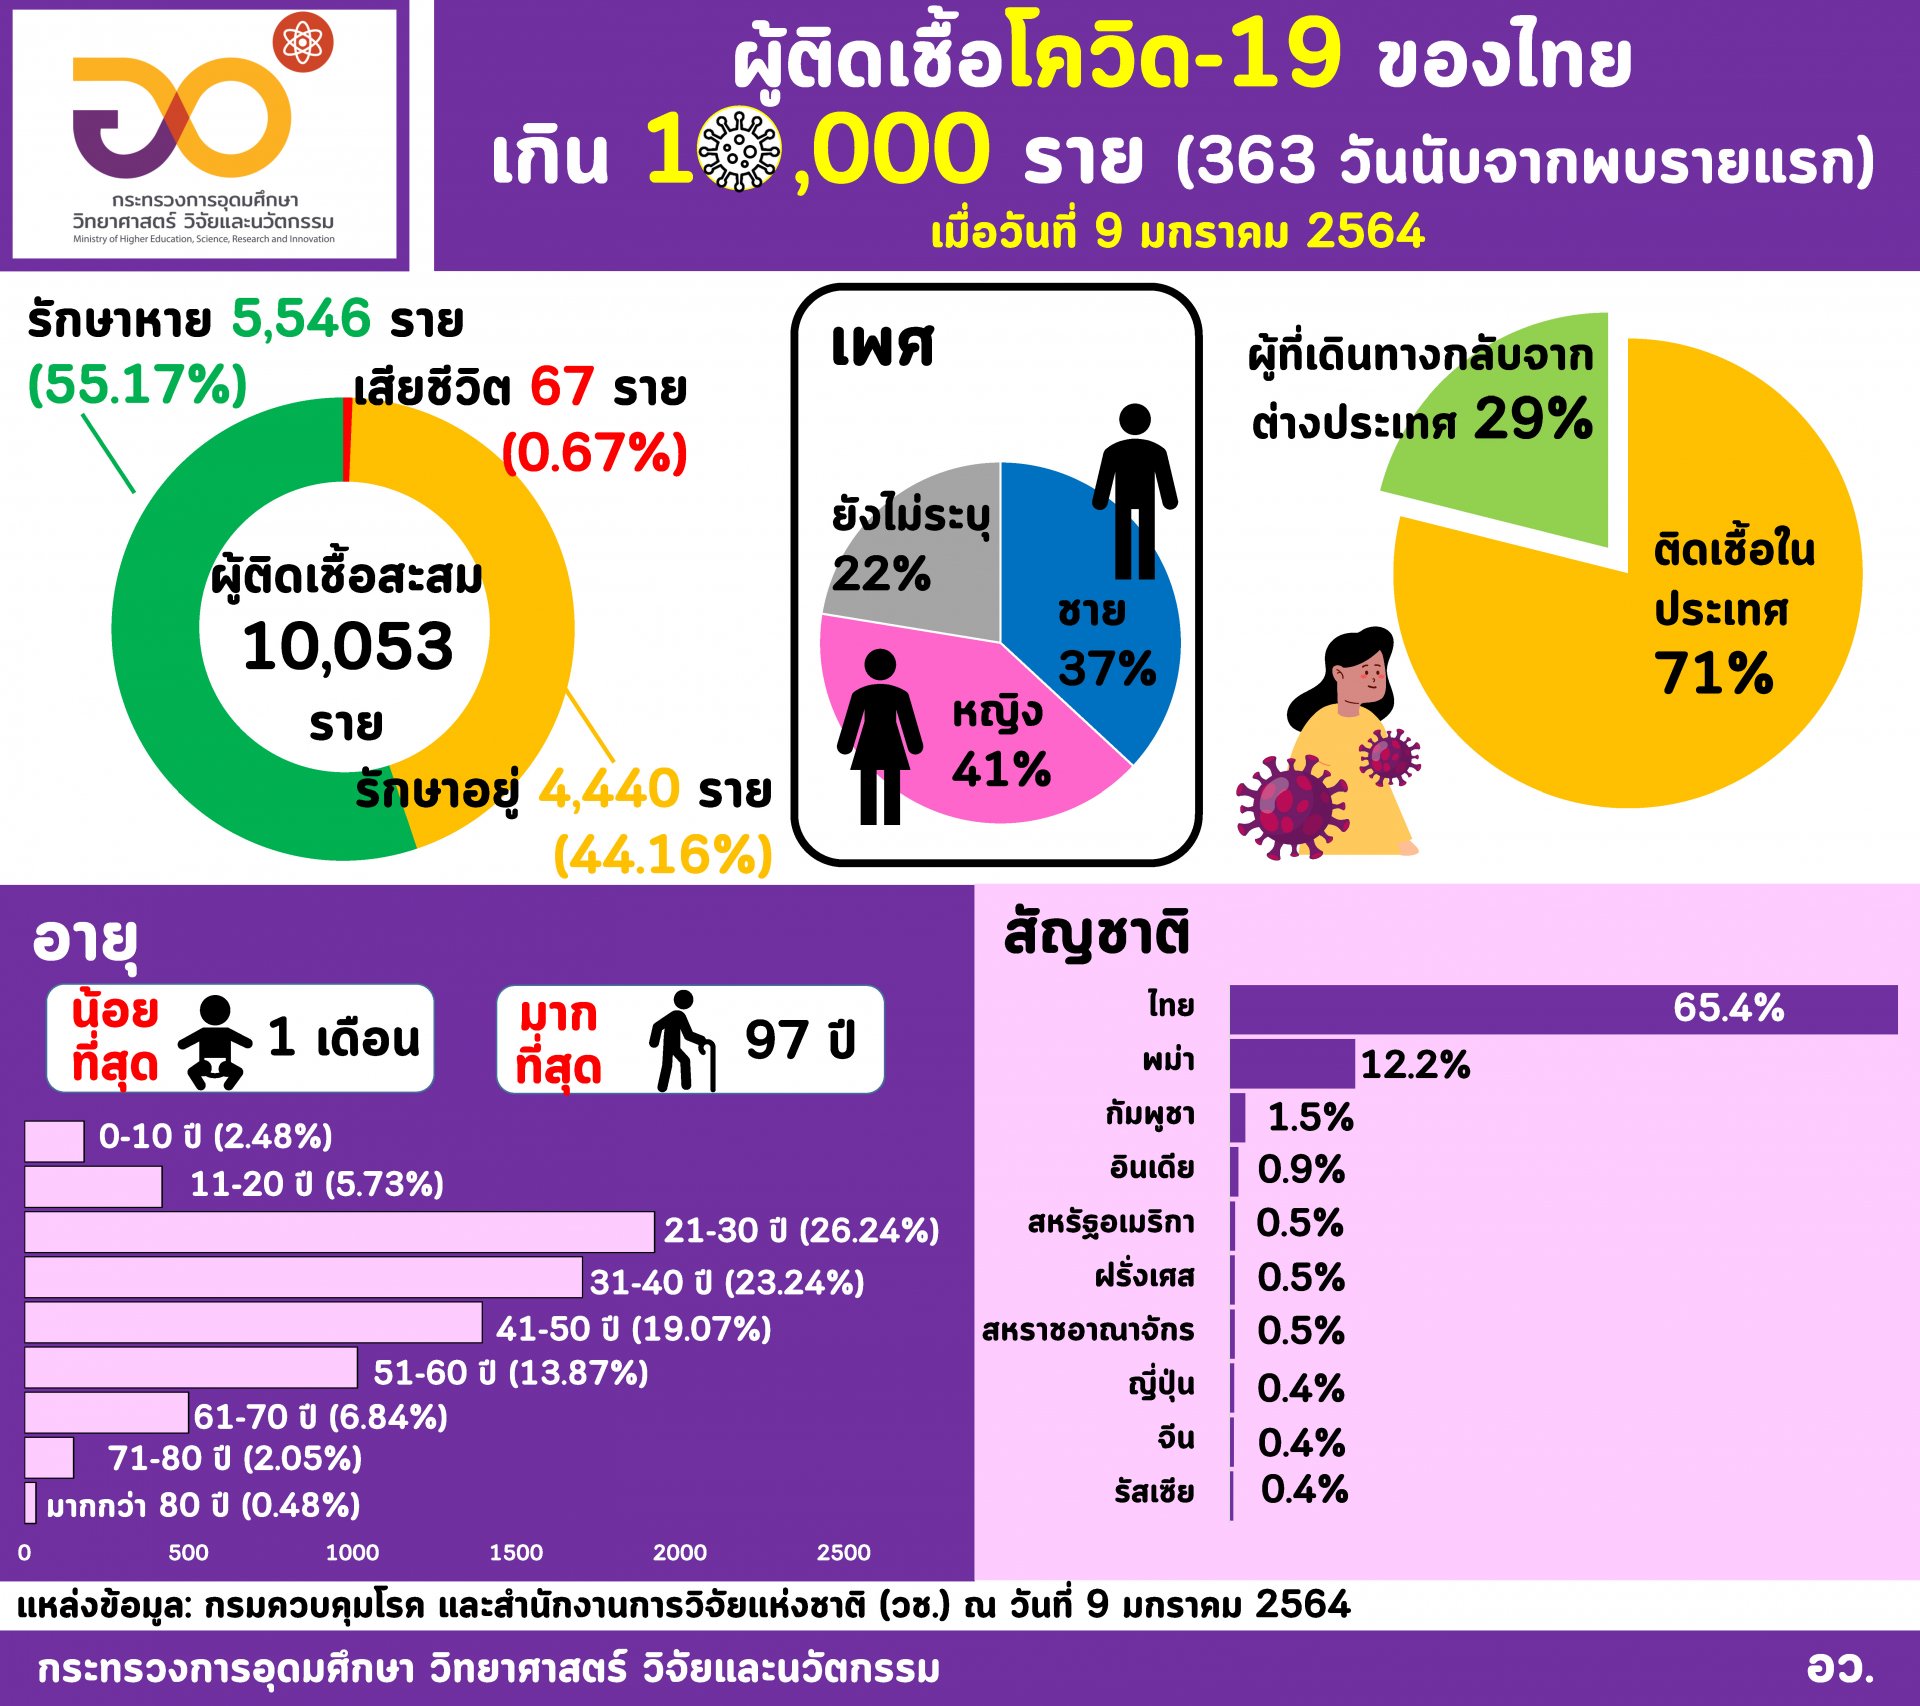 อว. สรุปคนไทยติดโควิด-19 รวมแล้ว 10,000 คนใน 363 วันหลังพบผู้ติดเชื้อรายแรก​ 